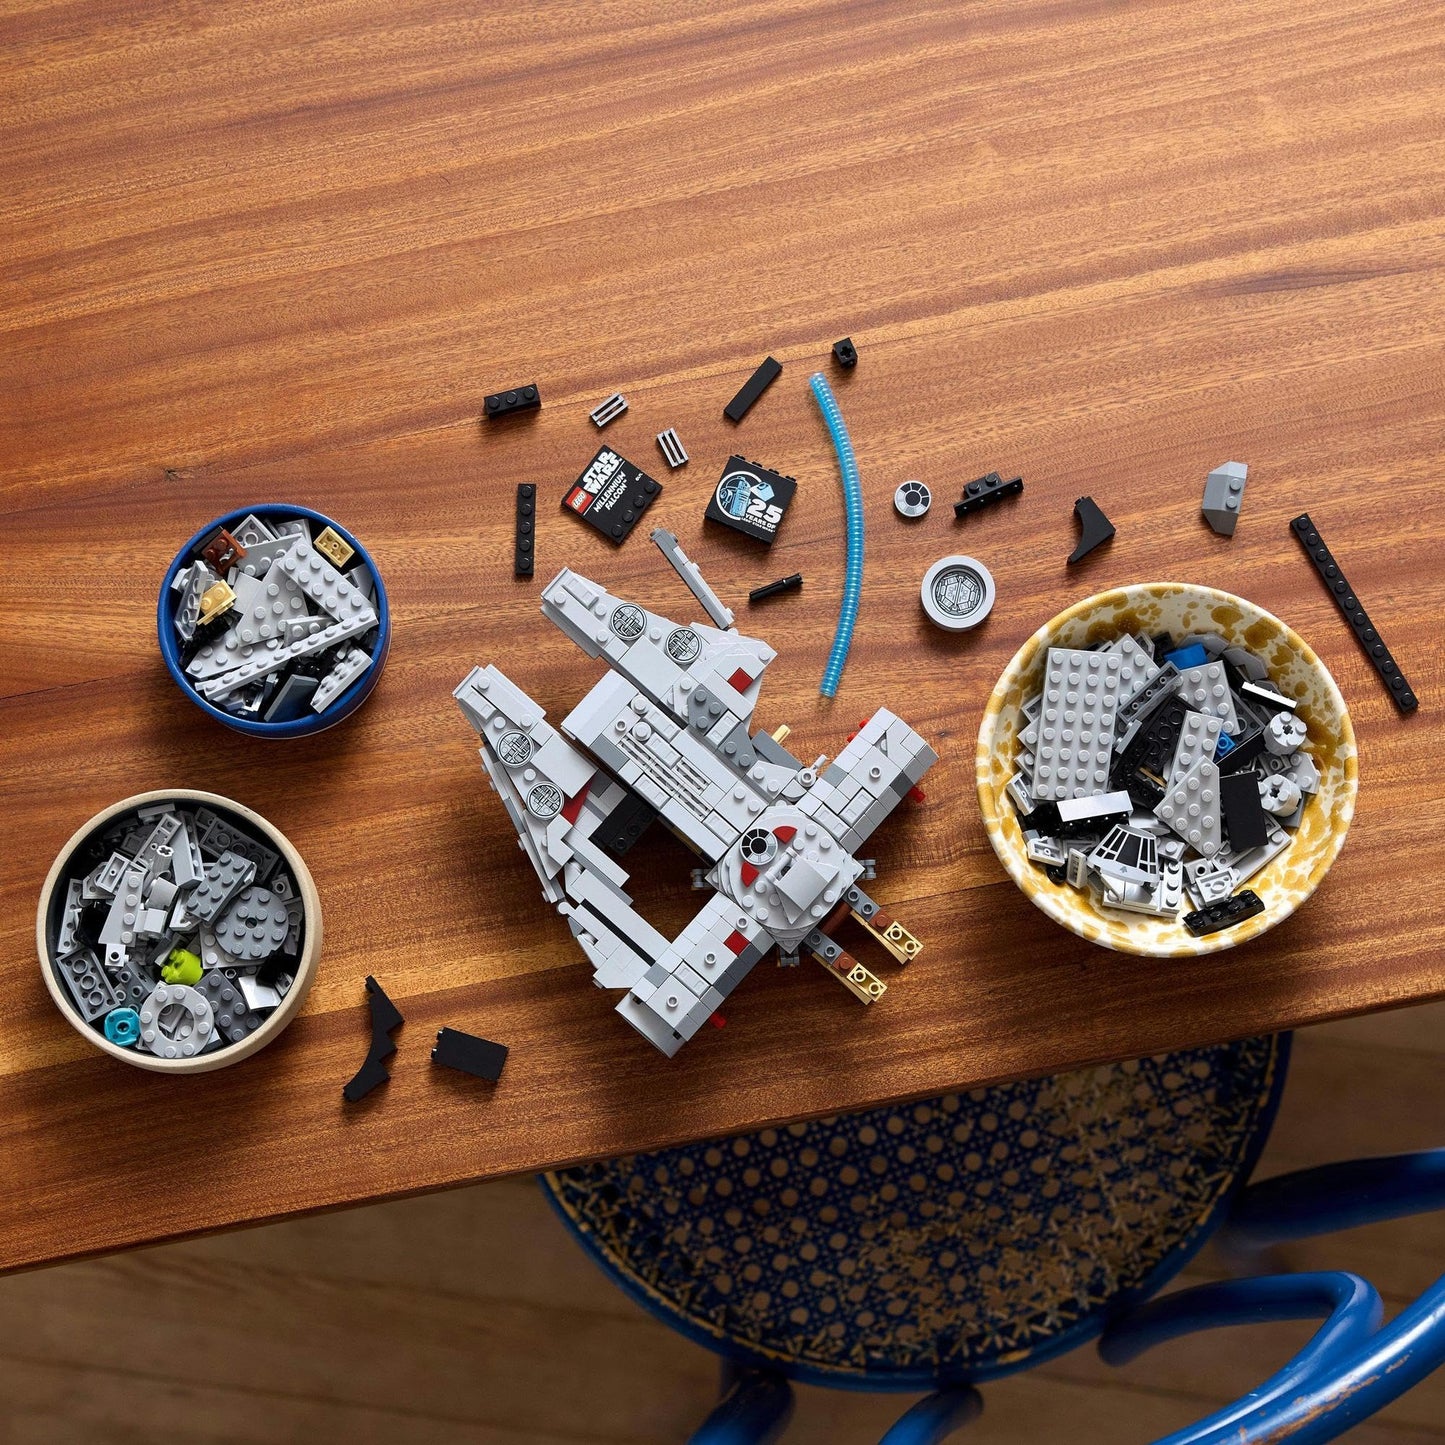 LEGO® Star Wars: A New Hope Millennium Falcon™ 75375